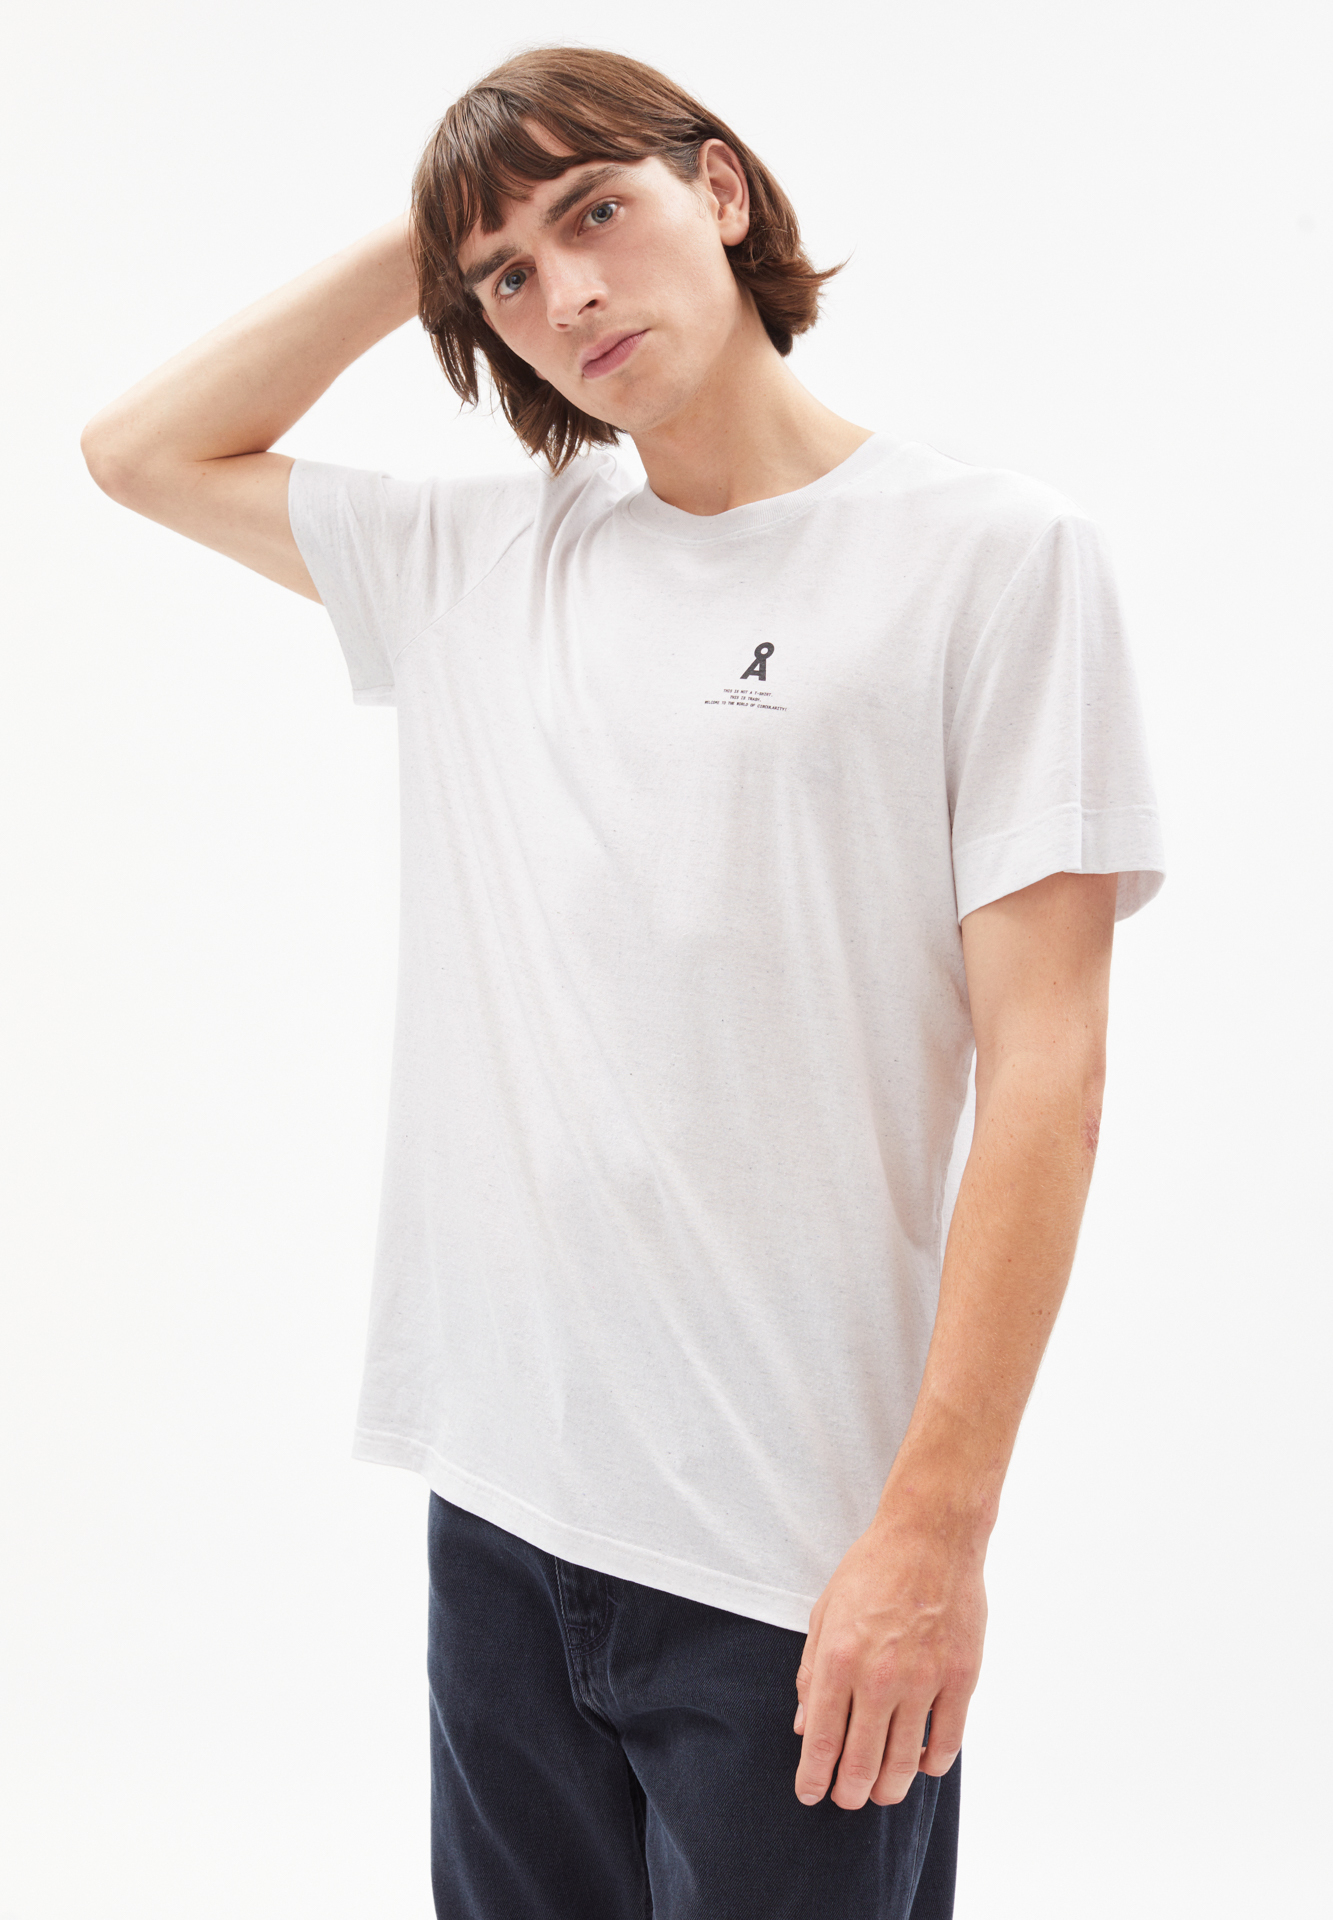 AADO CIRCULAR LOGO T-Shirt avec circularity.ID®.